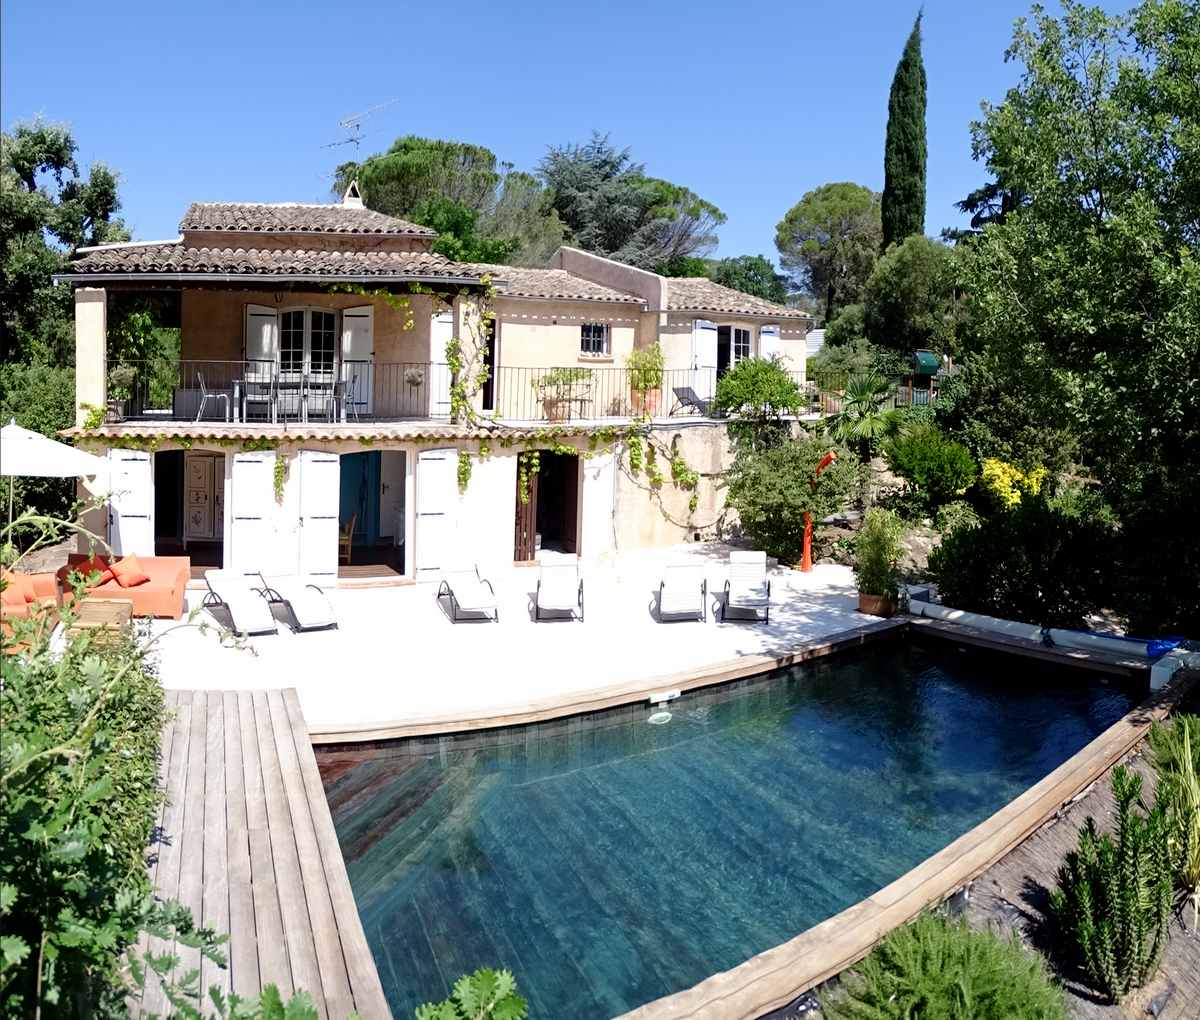 Affittare Villa climatizzata con piscina privata a Saint Raphael, Francia. 